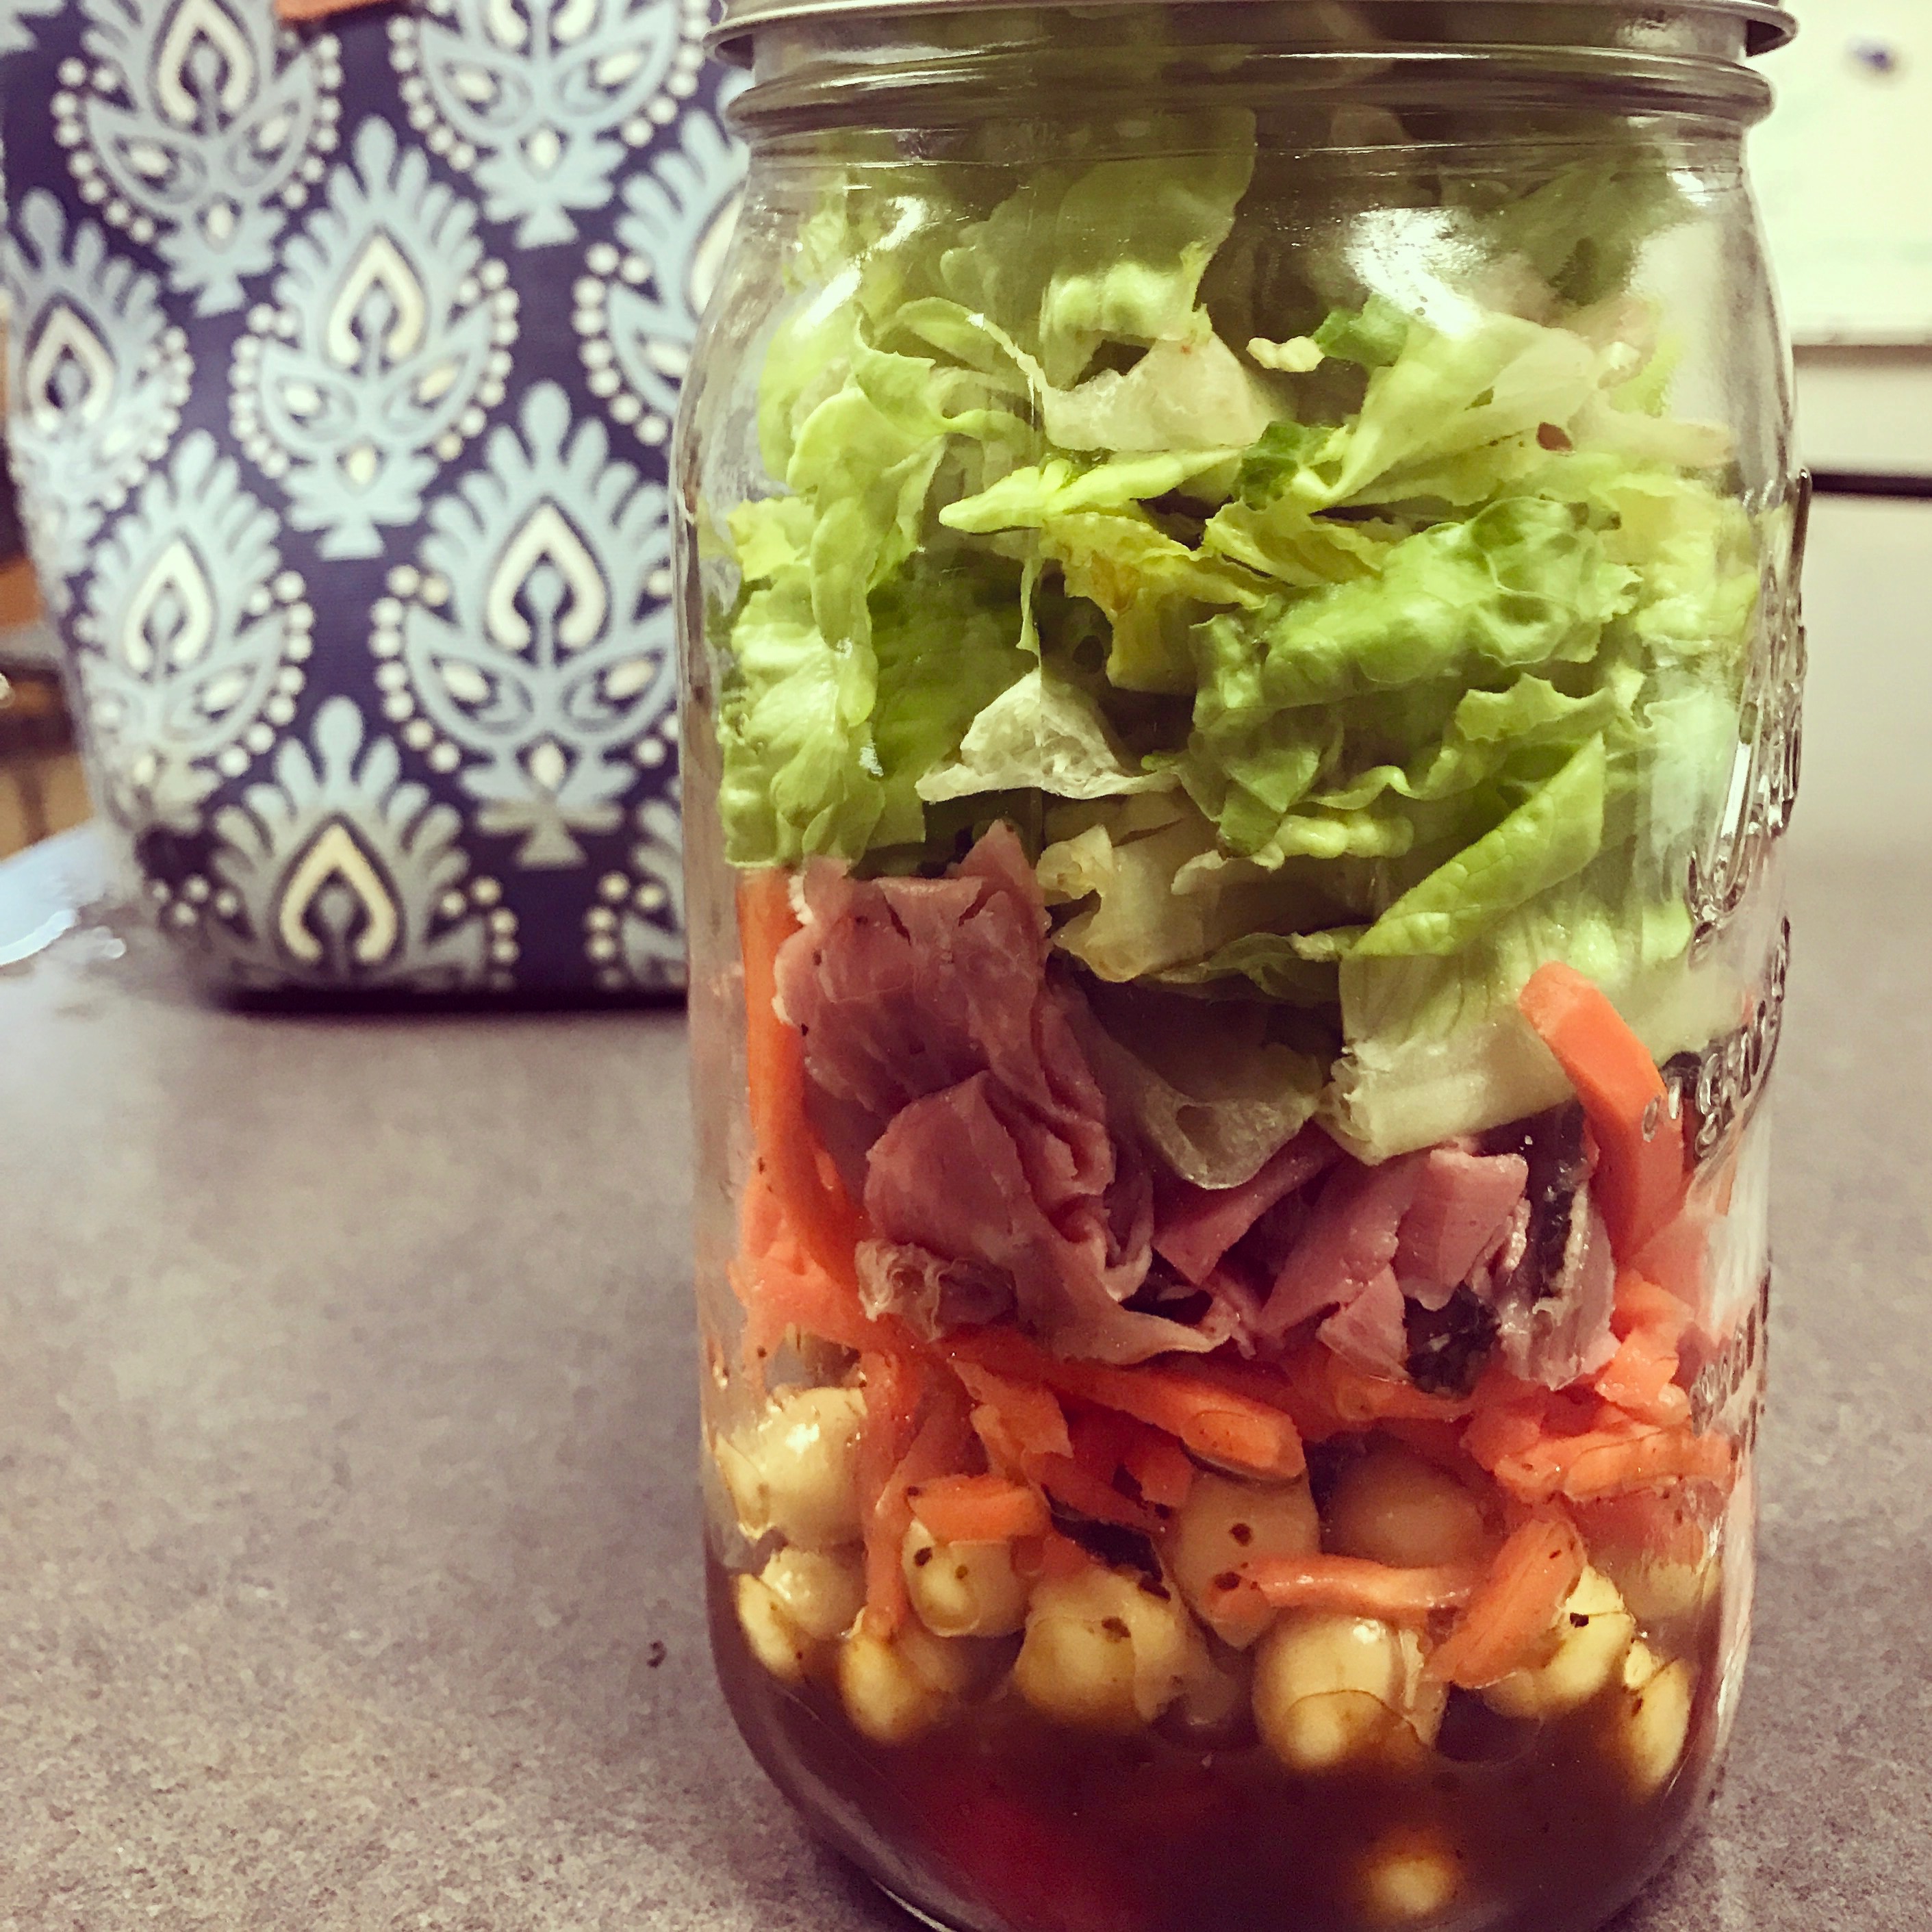 Roast Beef Salad in a Jar